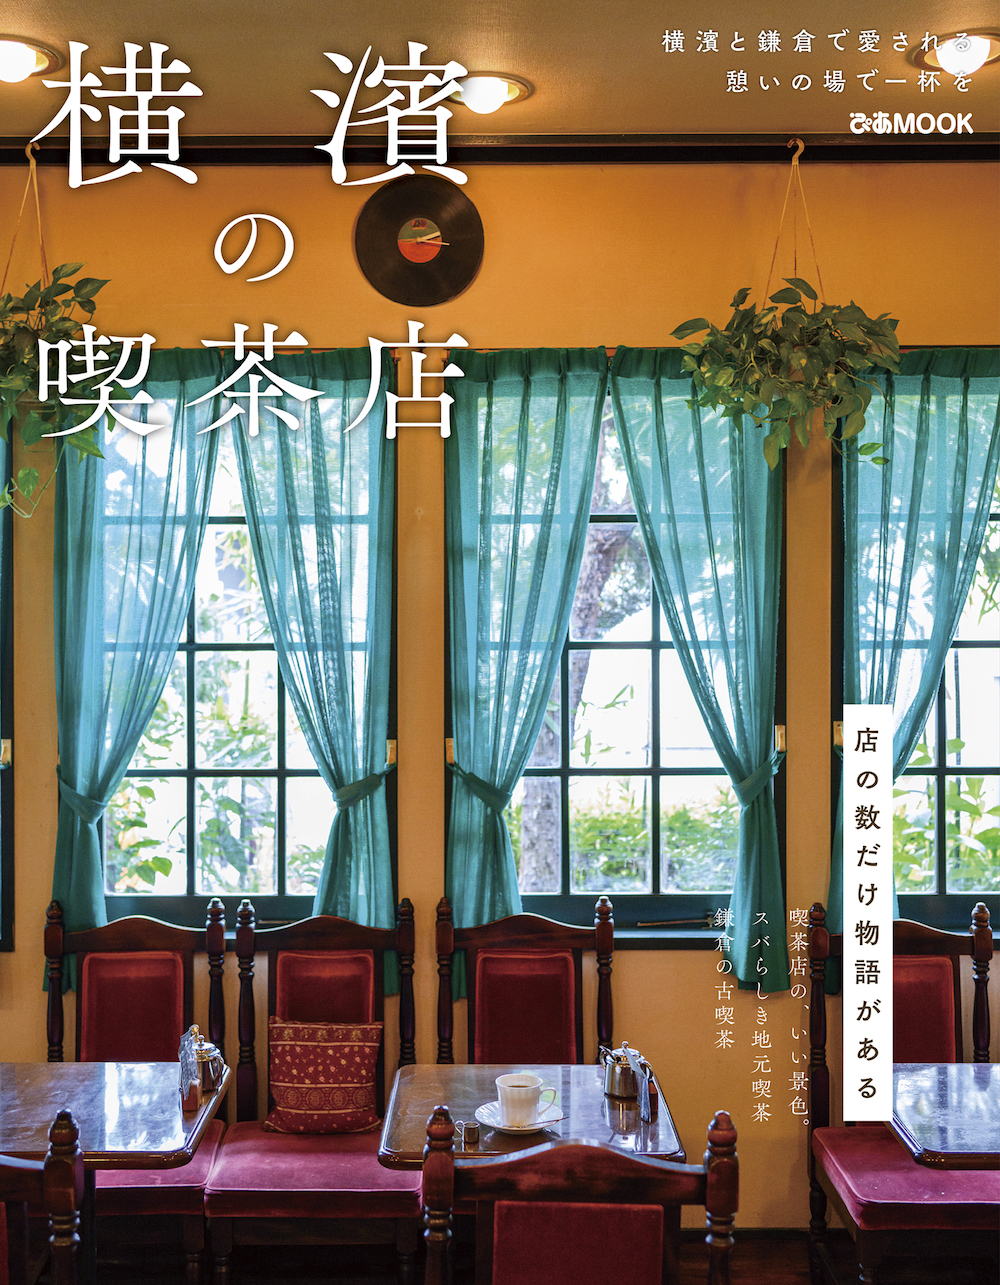  9月28日、書籍「横濱の喫茶店」（ぴあ）が発売された。価格は税込み1,080円。